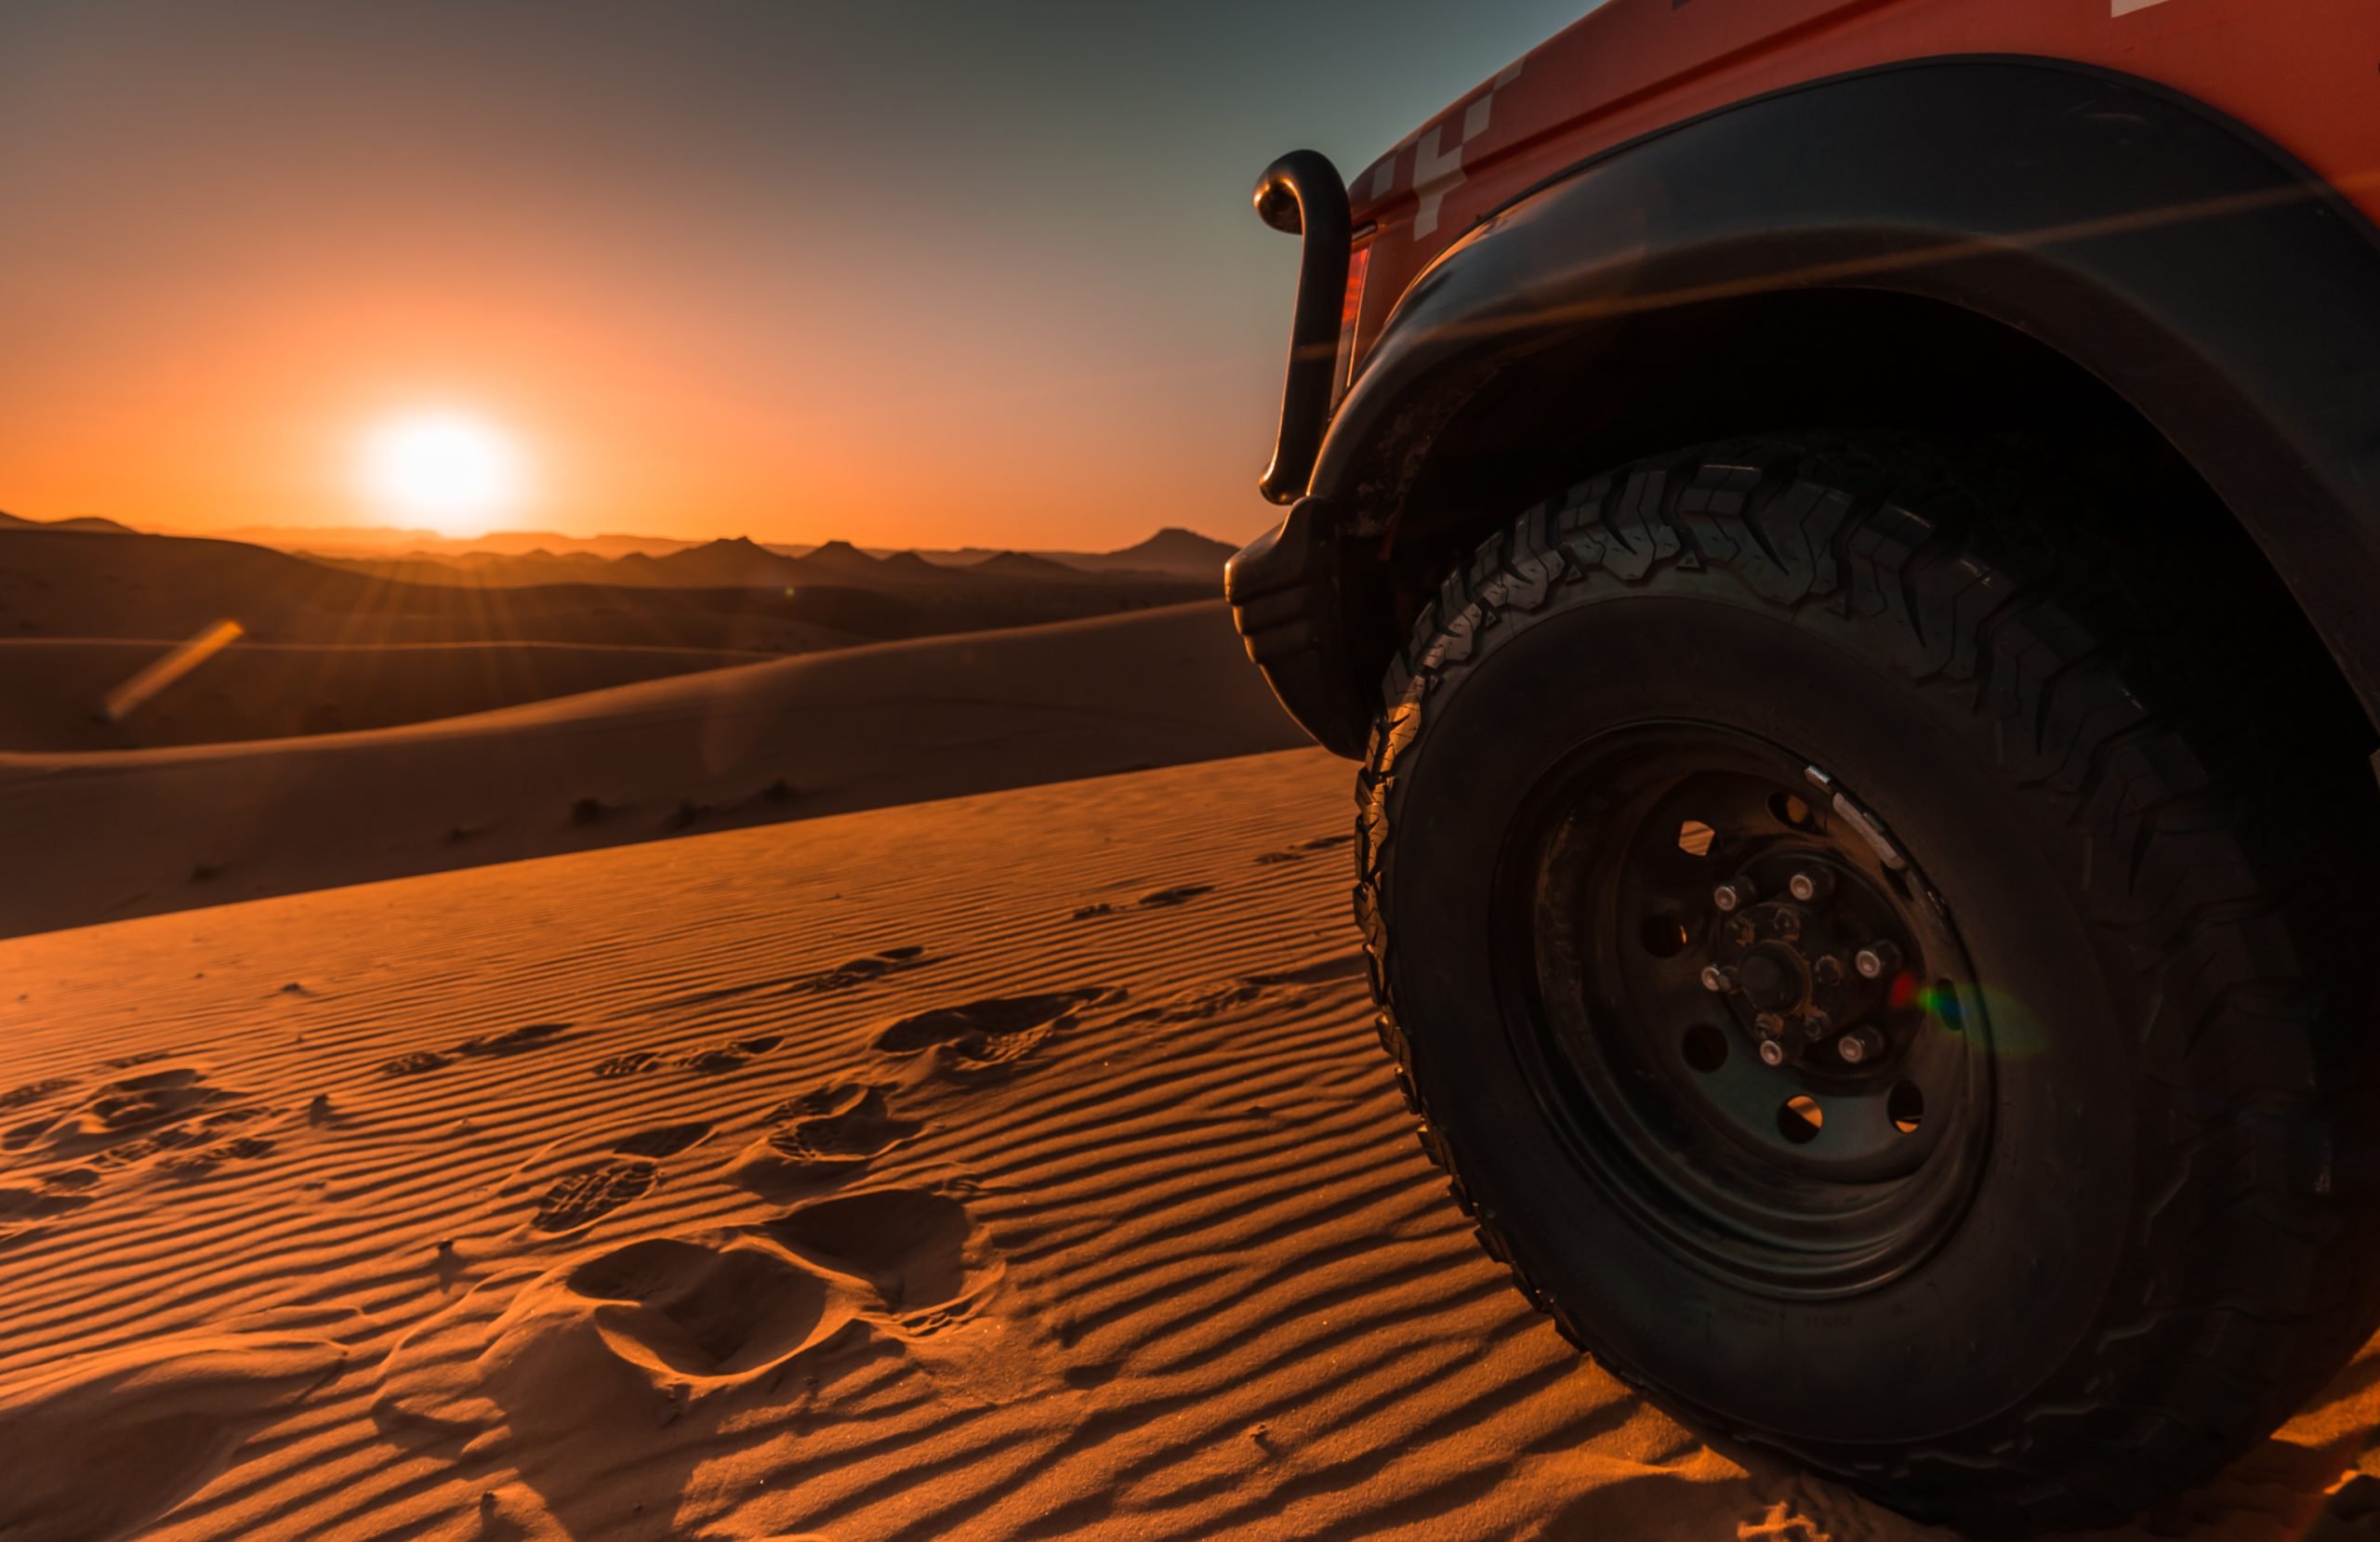 4x4 vehicle, desert and sunset